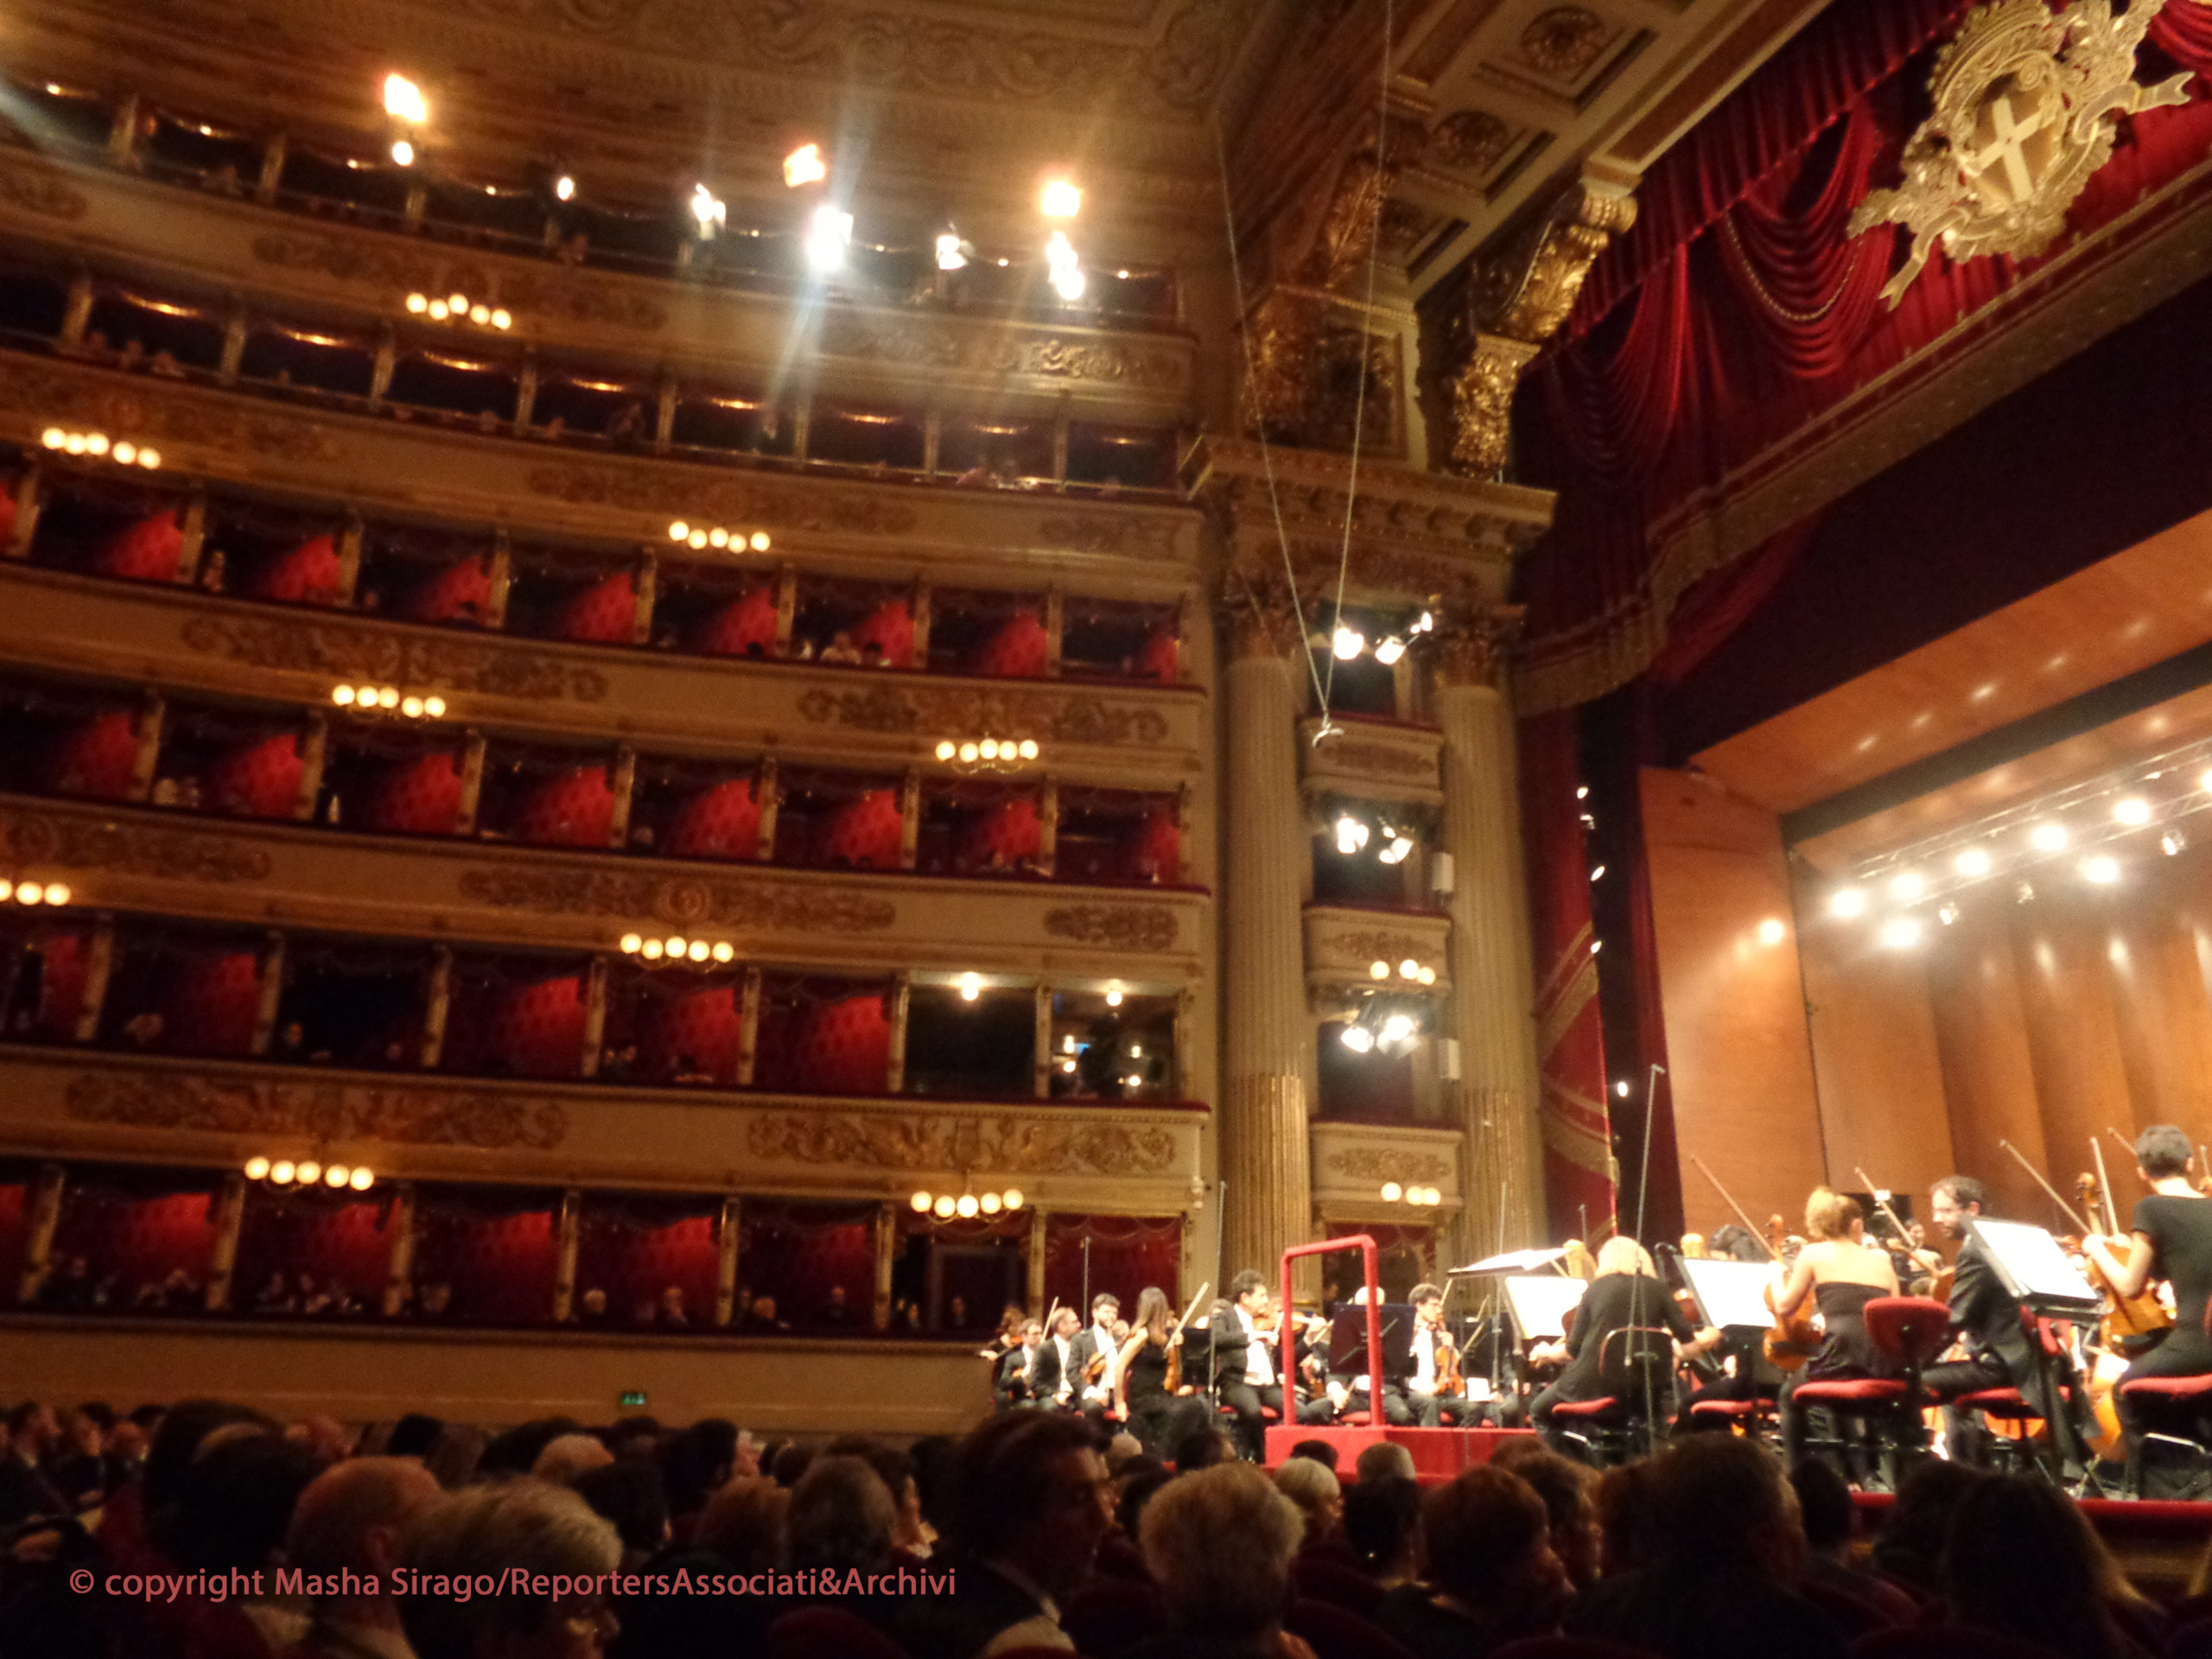 Omaggio a Ligeti per Festival “Milano Musica” al Teatro alla Scala